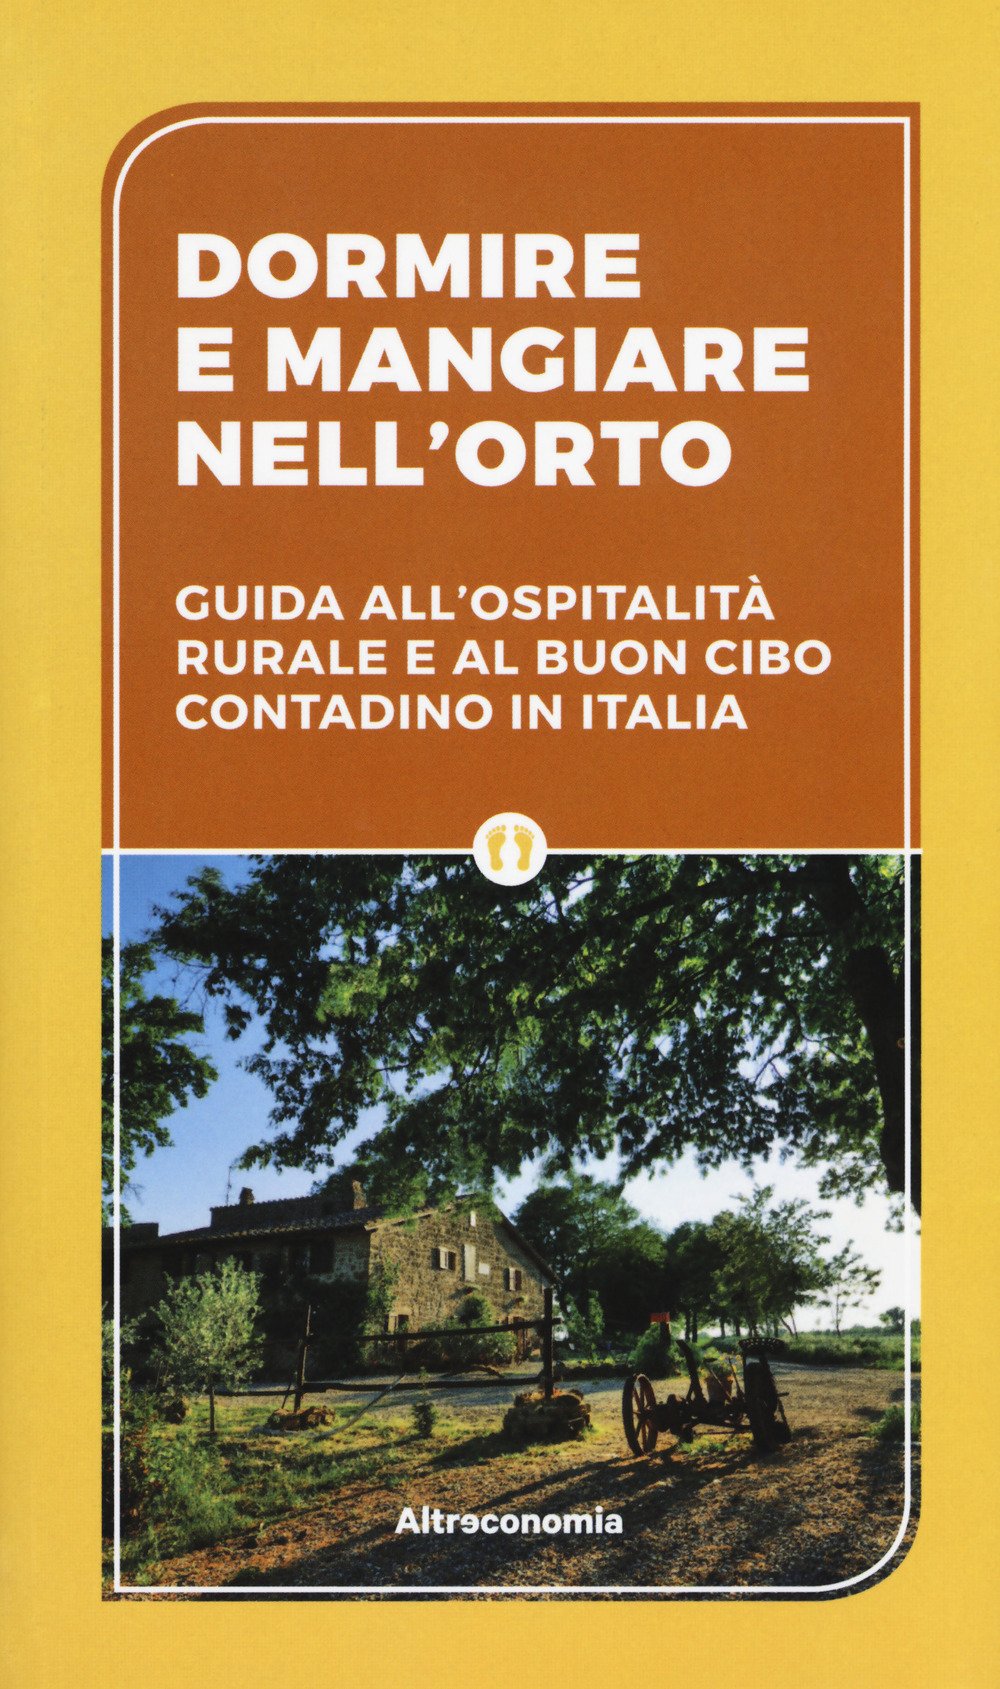 Dormire e mangiare nell'orto - guida all'ospitalità rurale e al buon cibo contadino in Italia | COD. AE2347